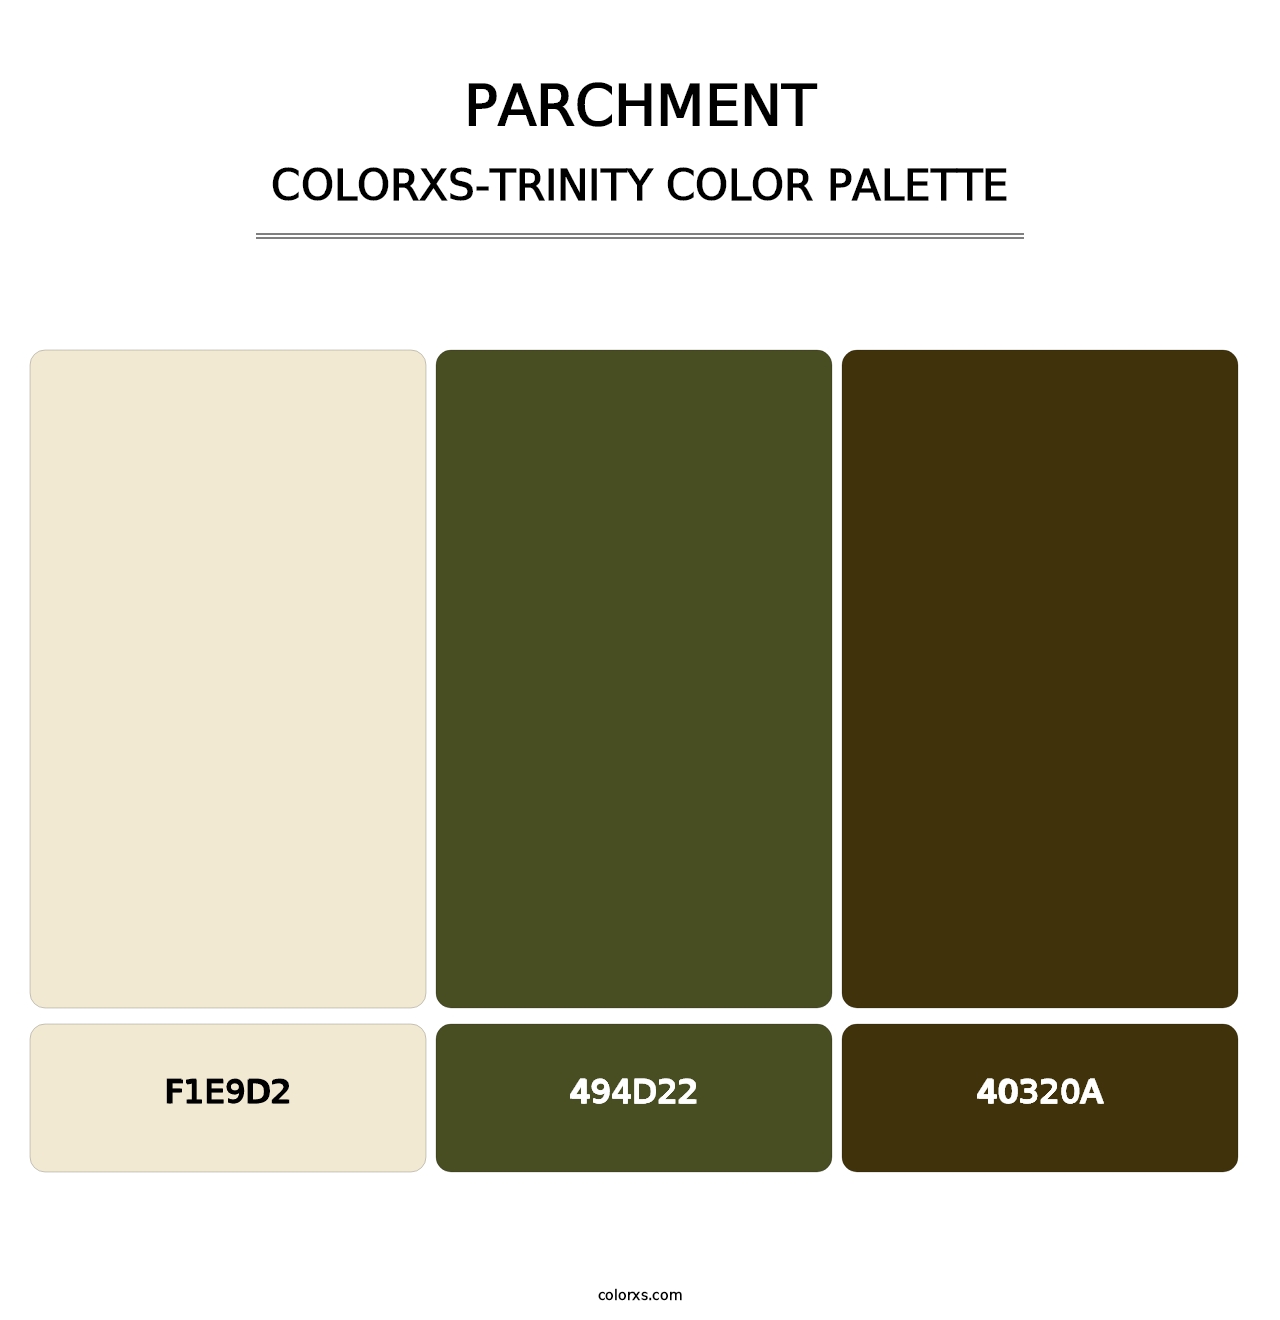 Parchment - Colorxs Trinity Palette